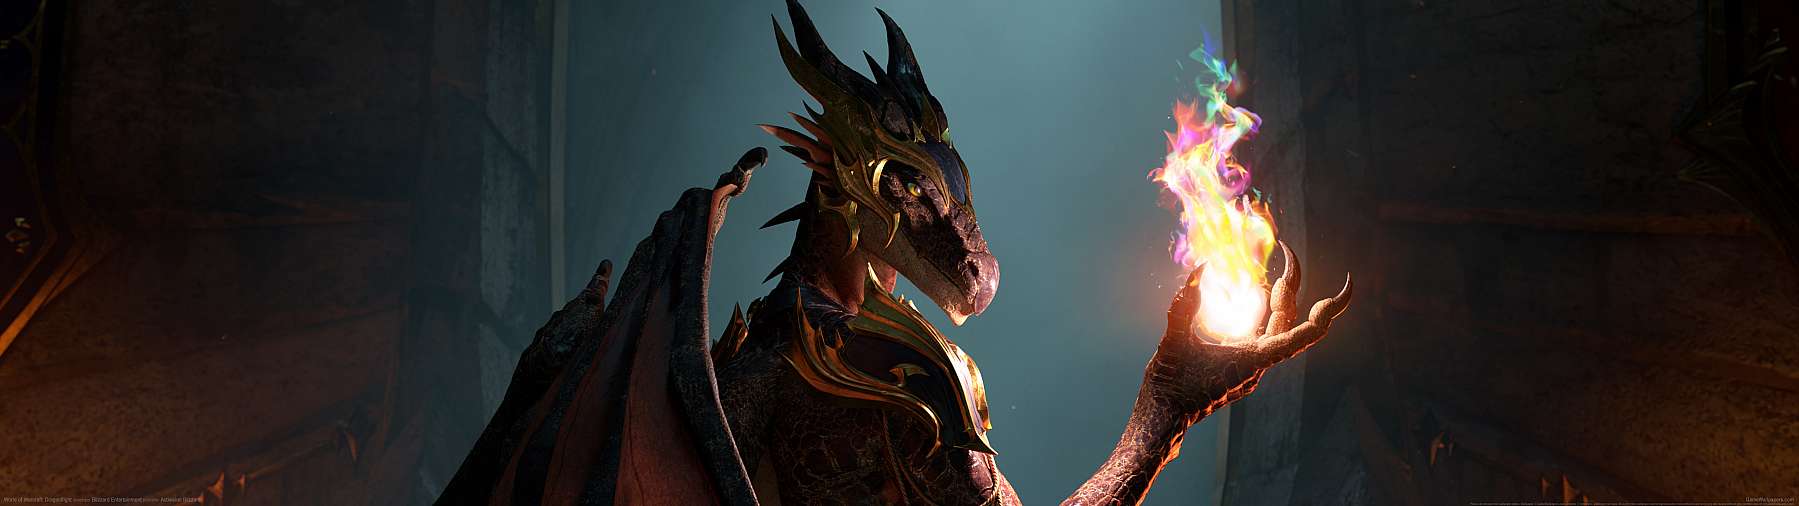 World of Warcraft: Dragonflight superwide achtergrond 02